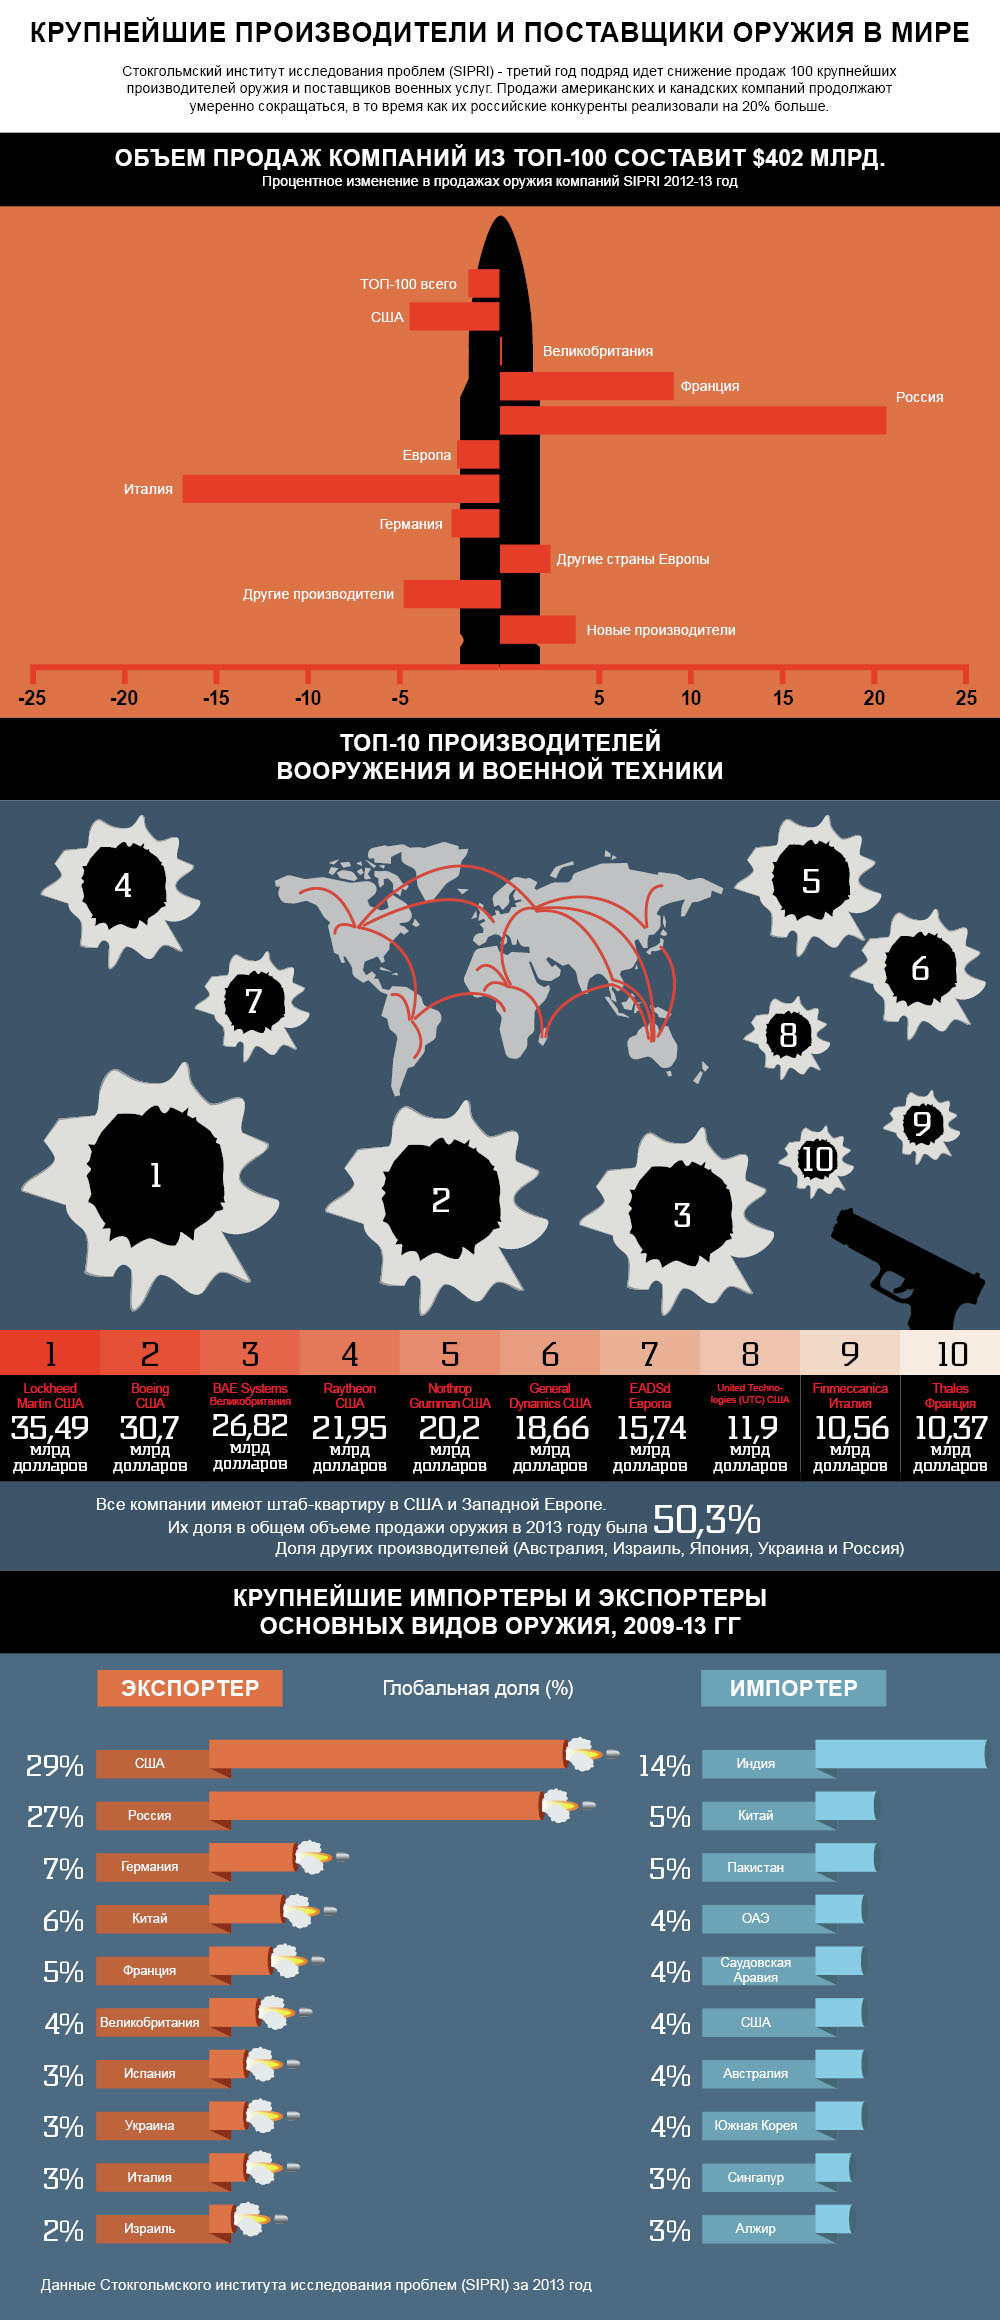 Крупнейшие производители и поставщики оружия в мире. Инфографика